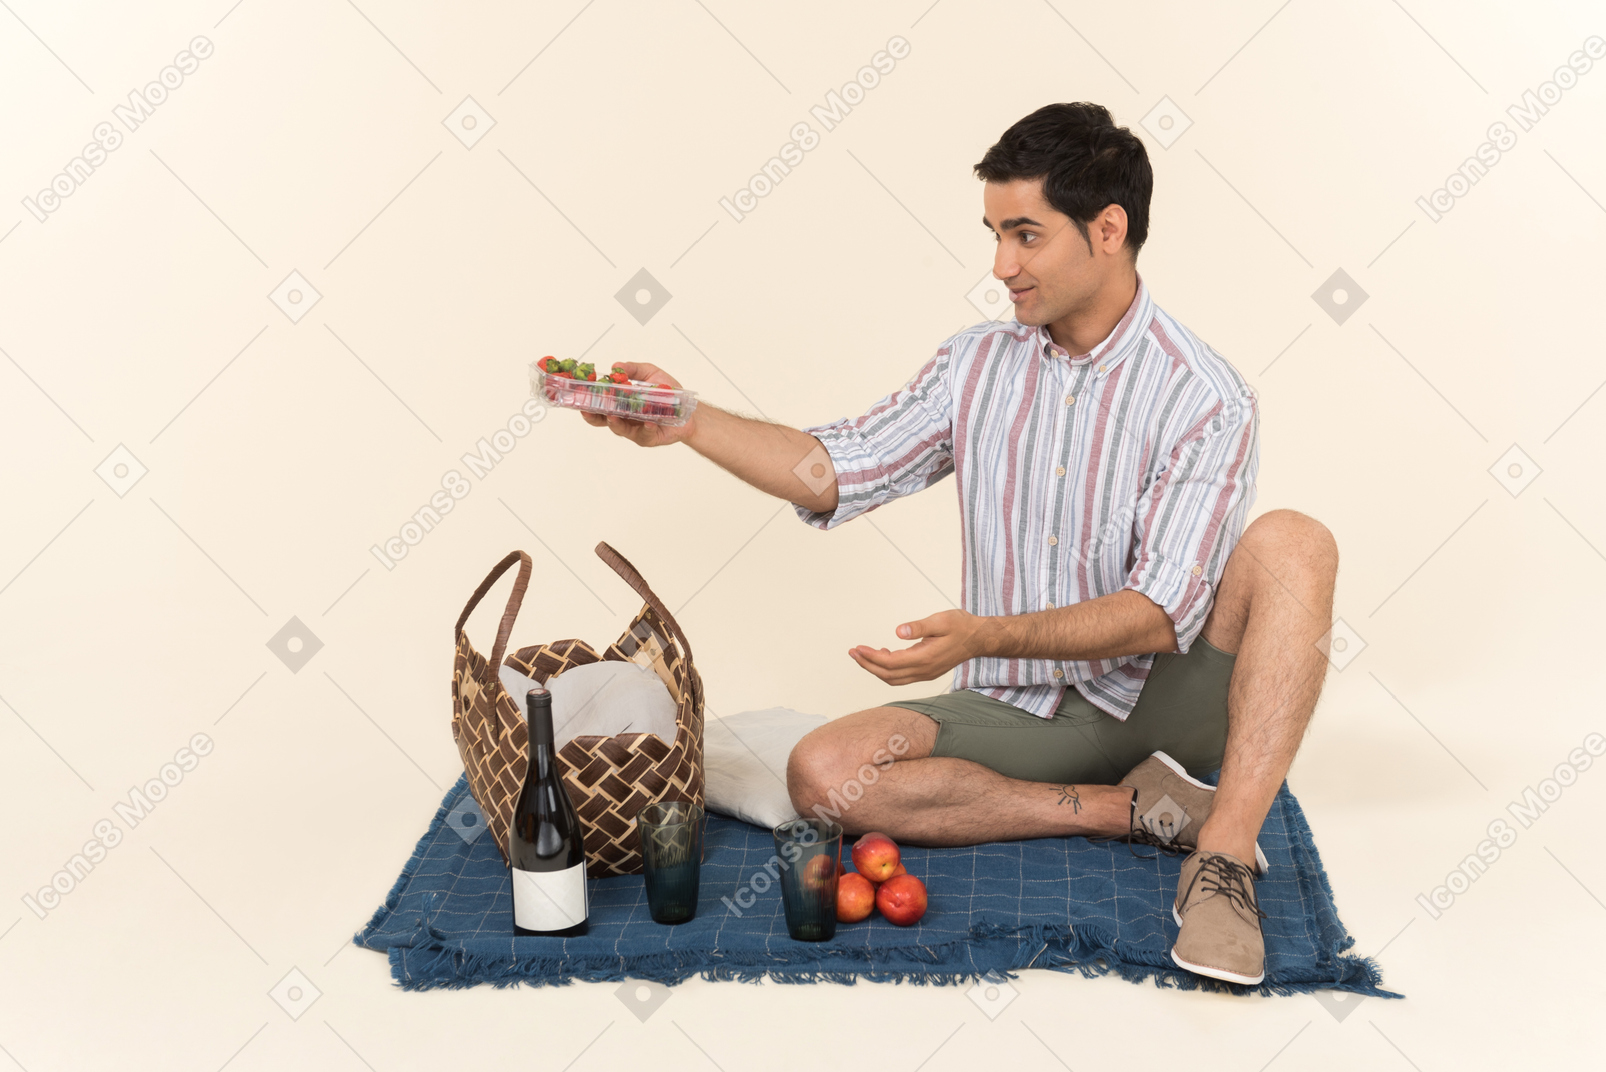 Junger kaukasischer mann, der auf der decke sitzt und früchte hält